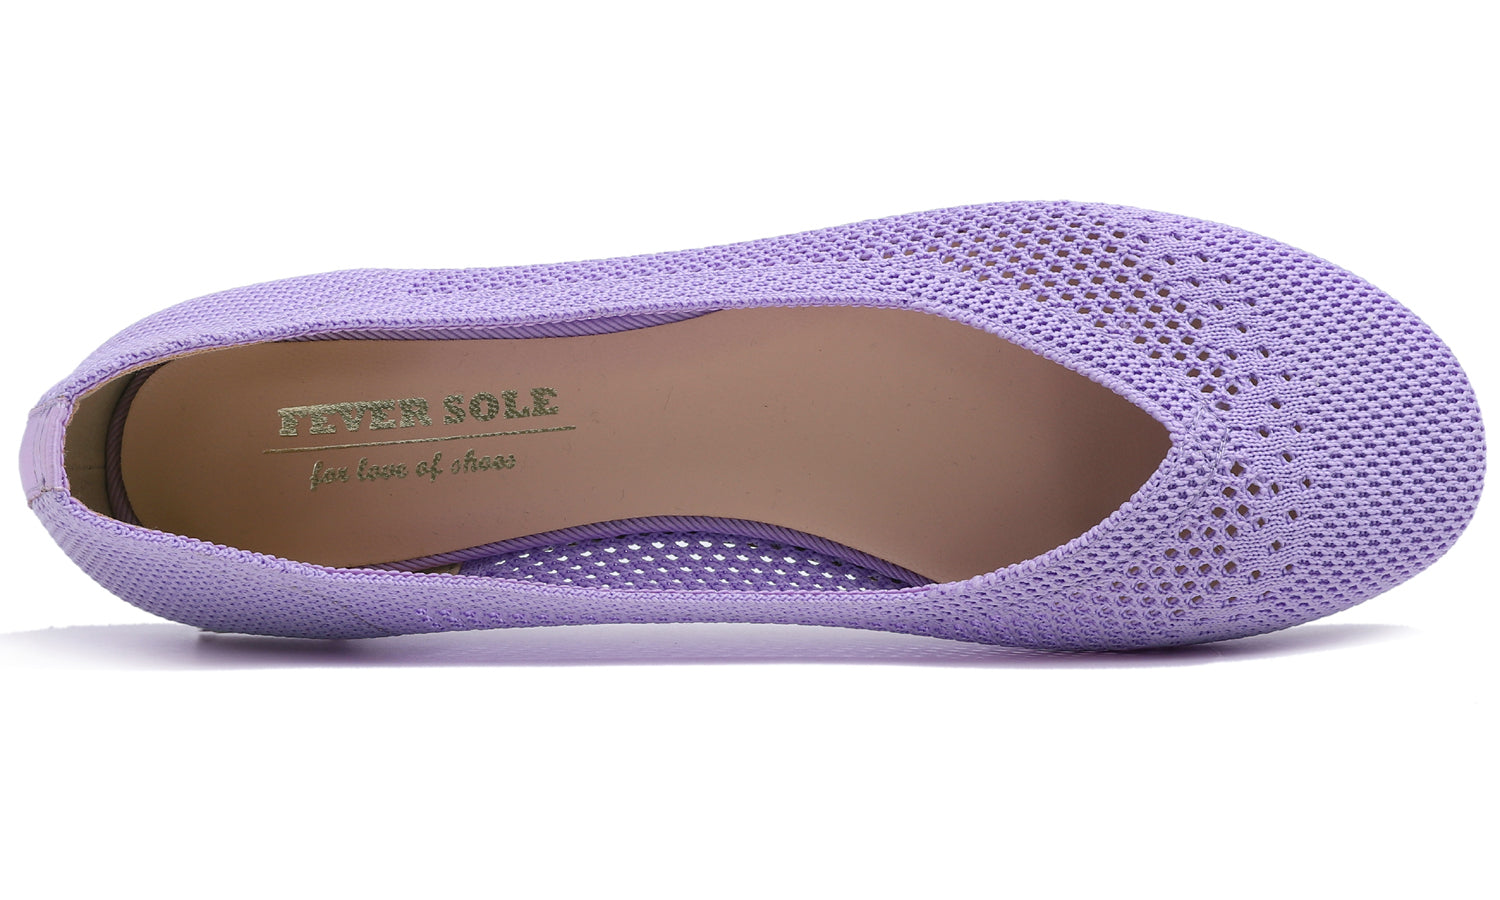 Feversole Women's Woven Fashion Breathable Knit Flat Shoes Lavender Purple Ballet